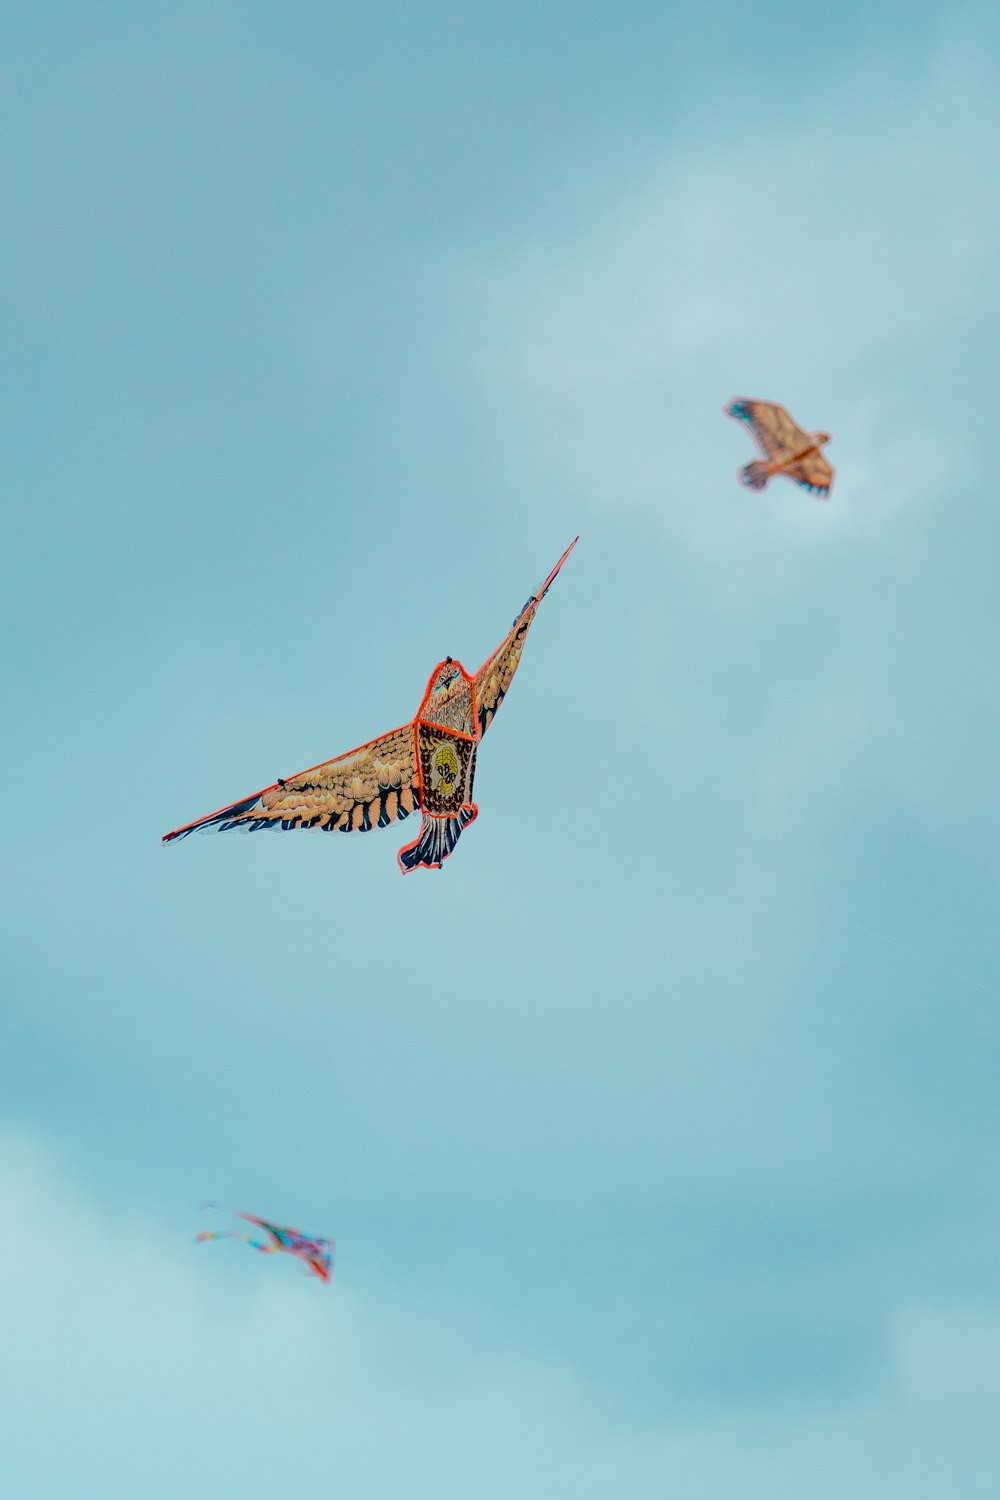 tilt shift lens photography of three kites